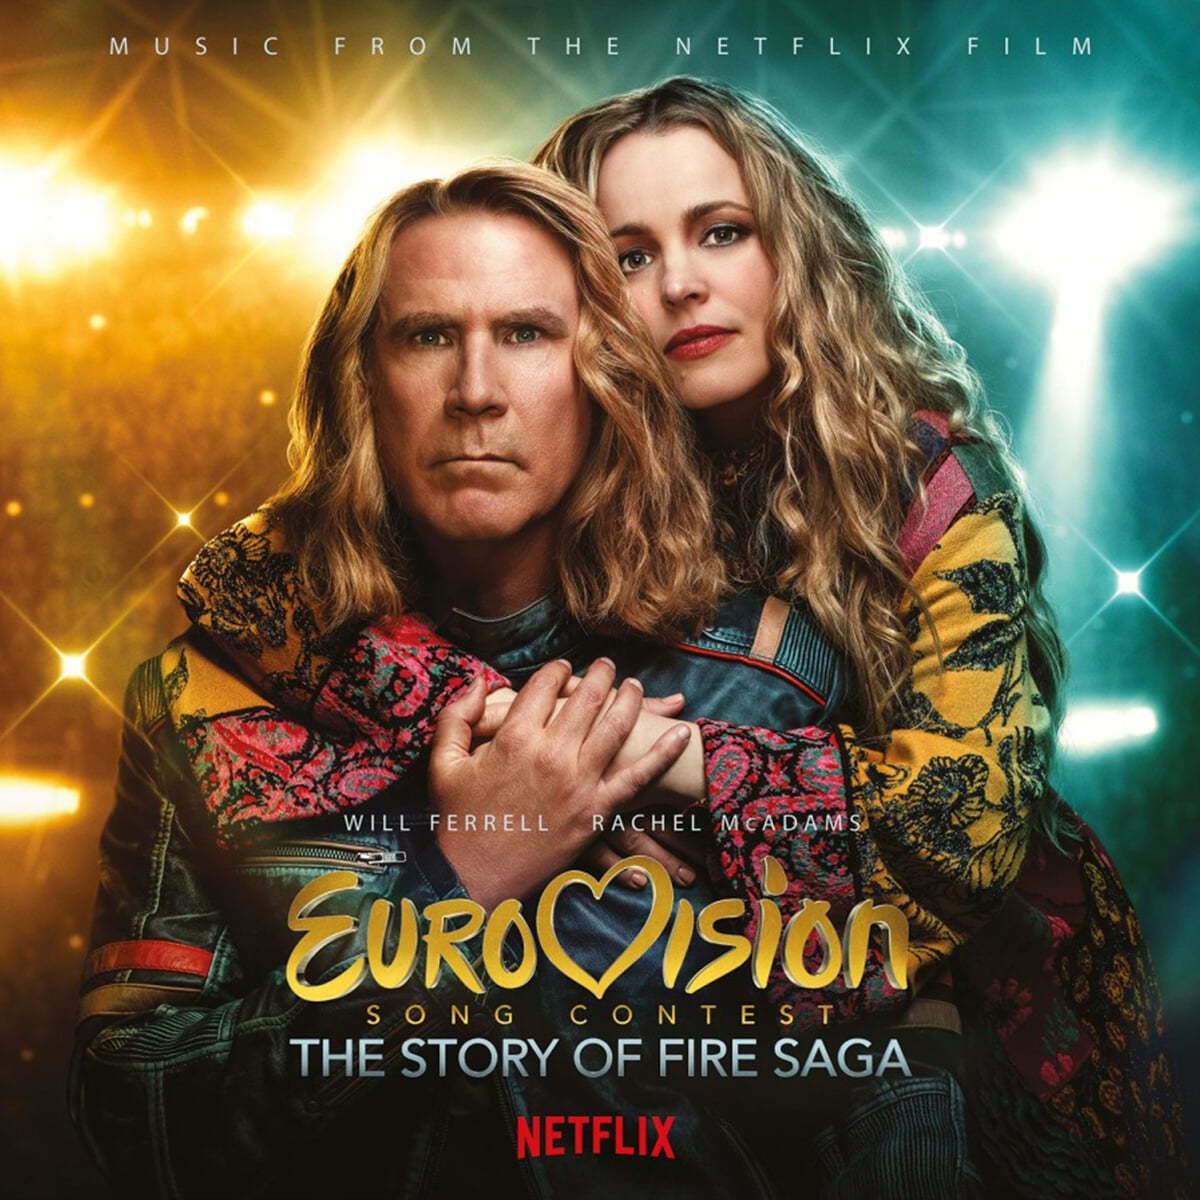 '유로비전 송 콘테스트: 파이어 사가 스토리' 영화음악 (Eurovision Song Contest: Story Of Fire Saga) [화이트 컬러 LP] 